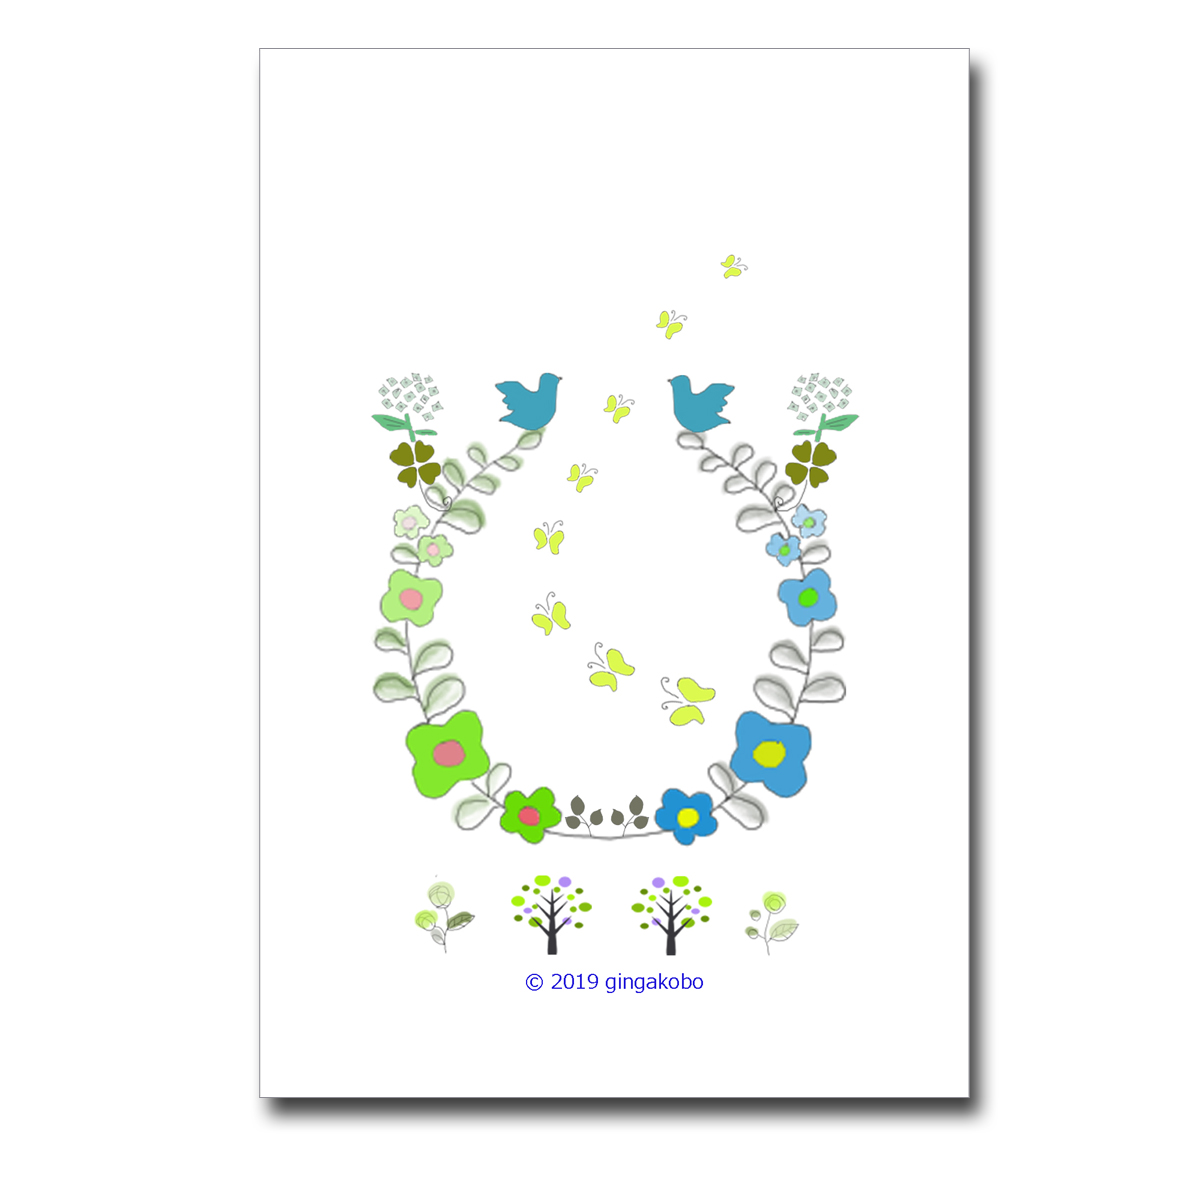 幸せの青い鳥と四つ葉のクローバー ほっこり癒しのイラストポストカード2枚組 No 4 Iichi ハンドメイド クラフト作品 手仕事品の通販